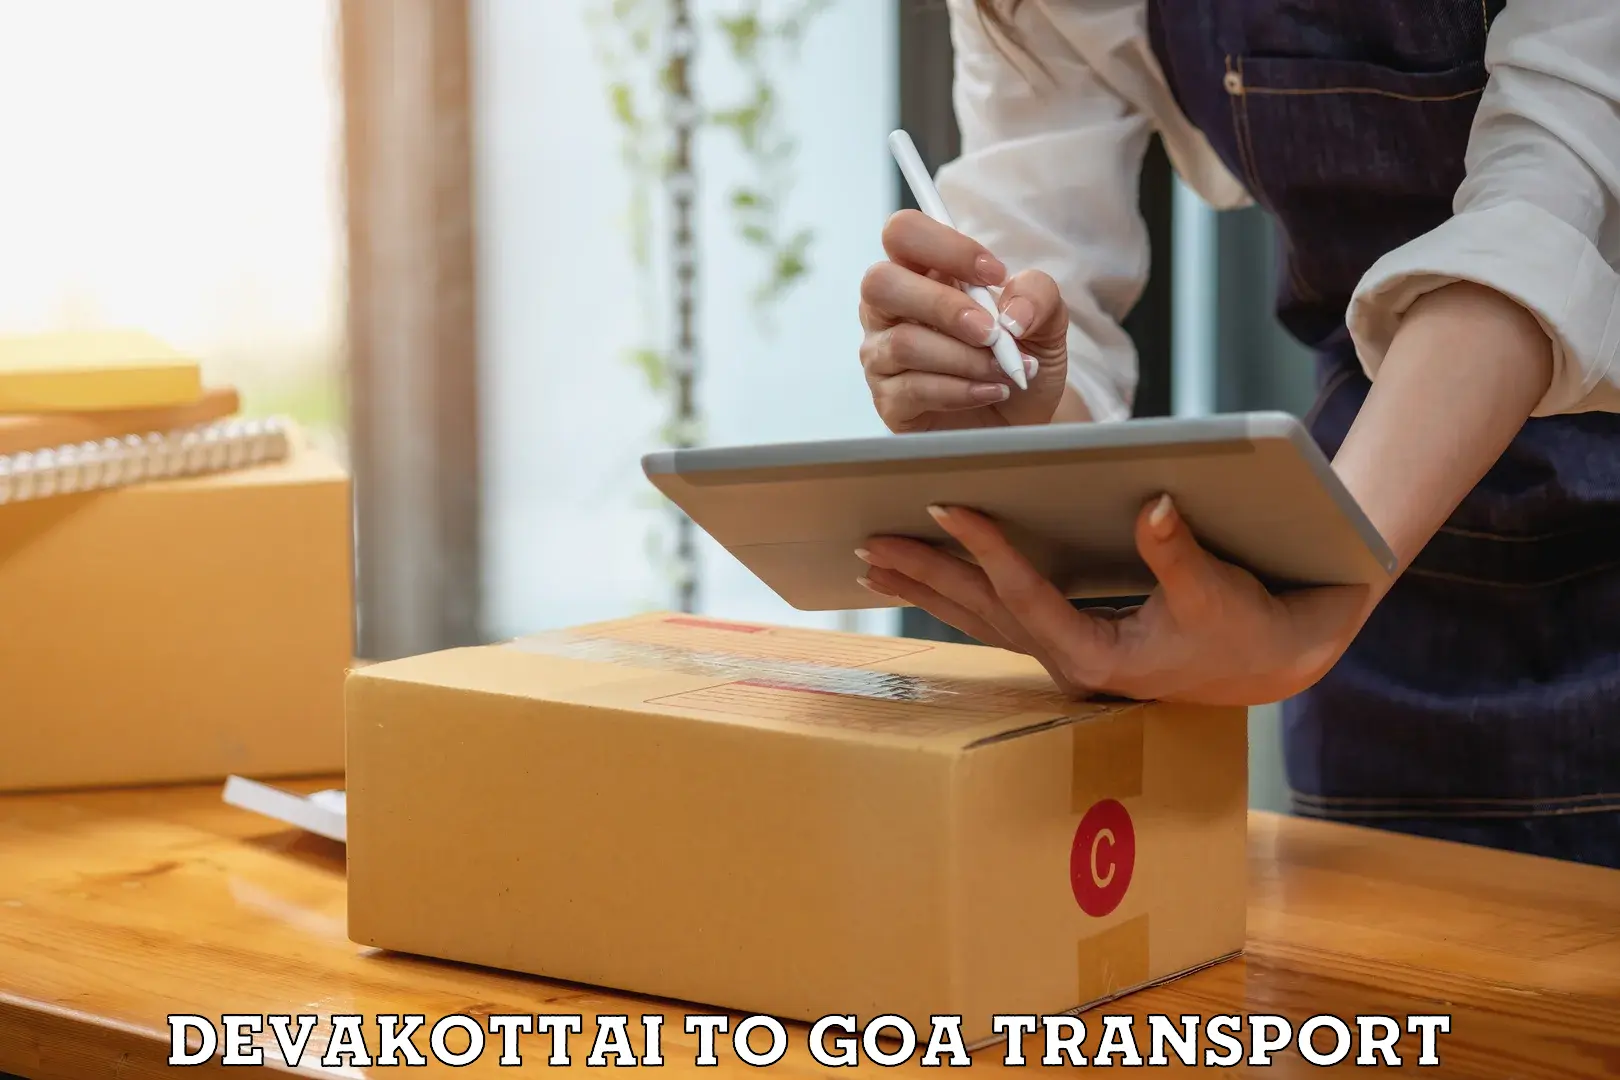 Online transport Devakottai to Mormugao Port